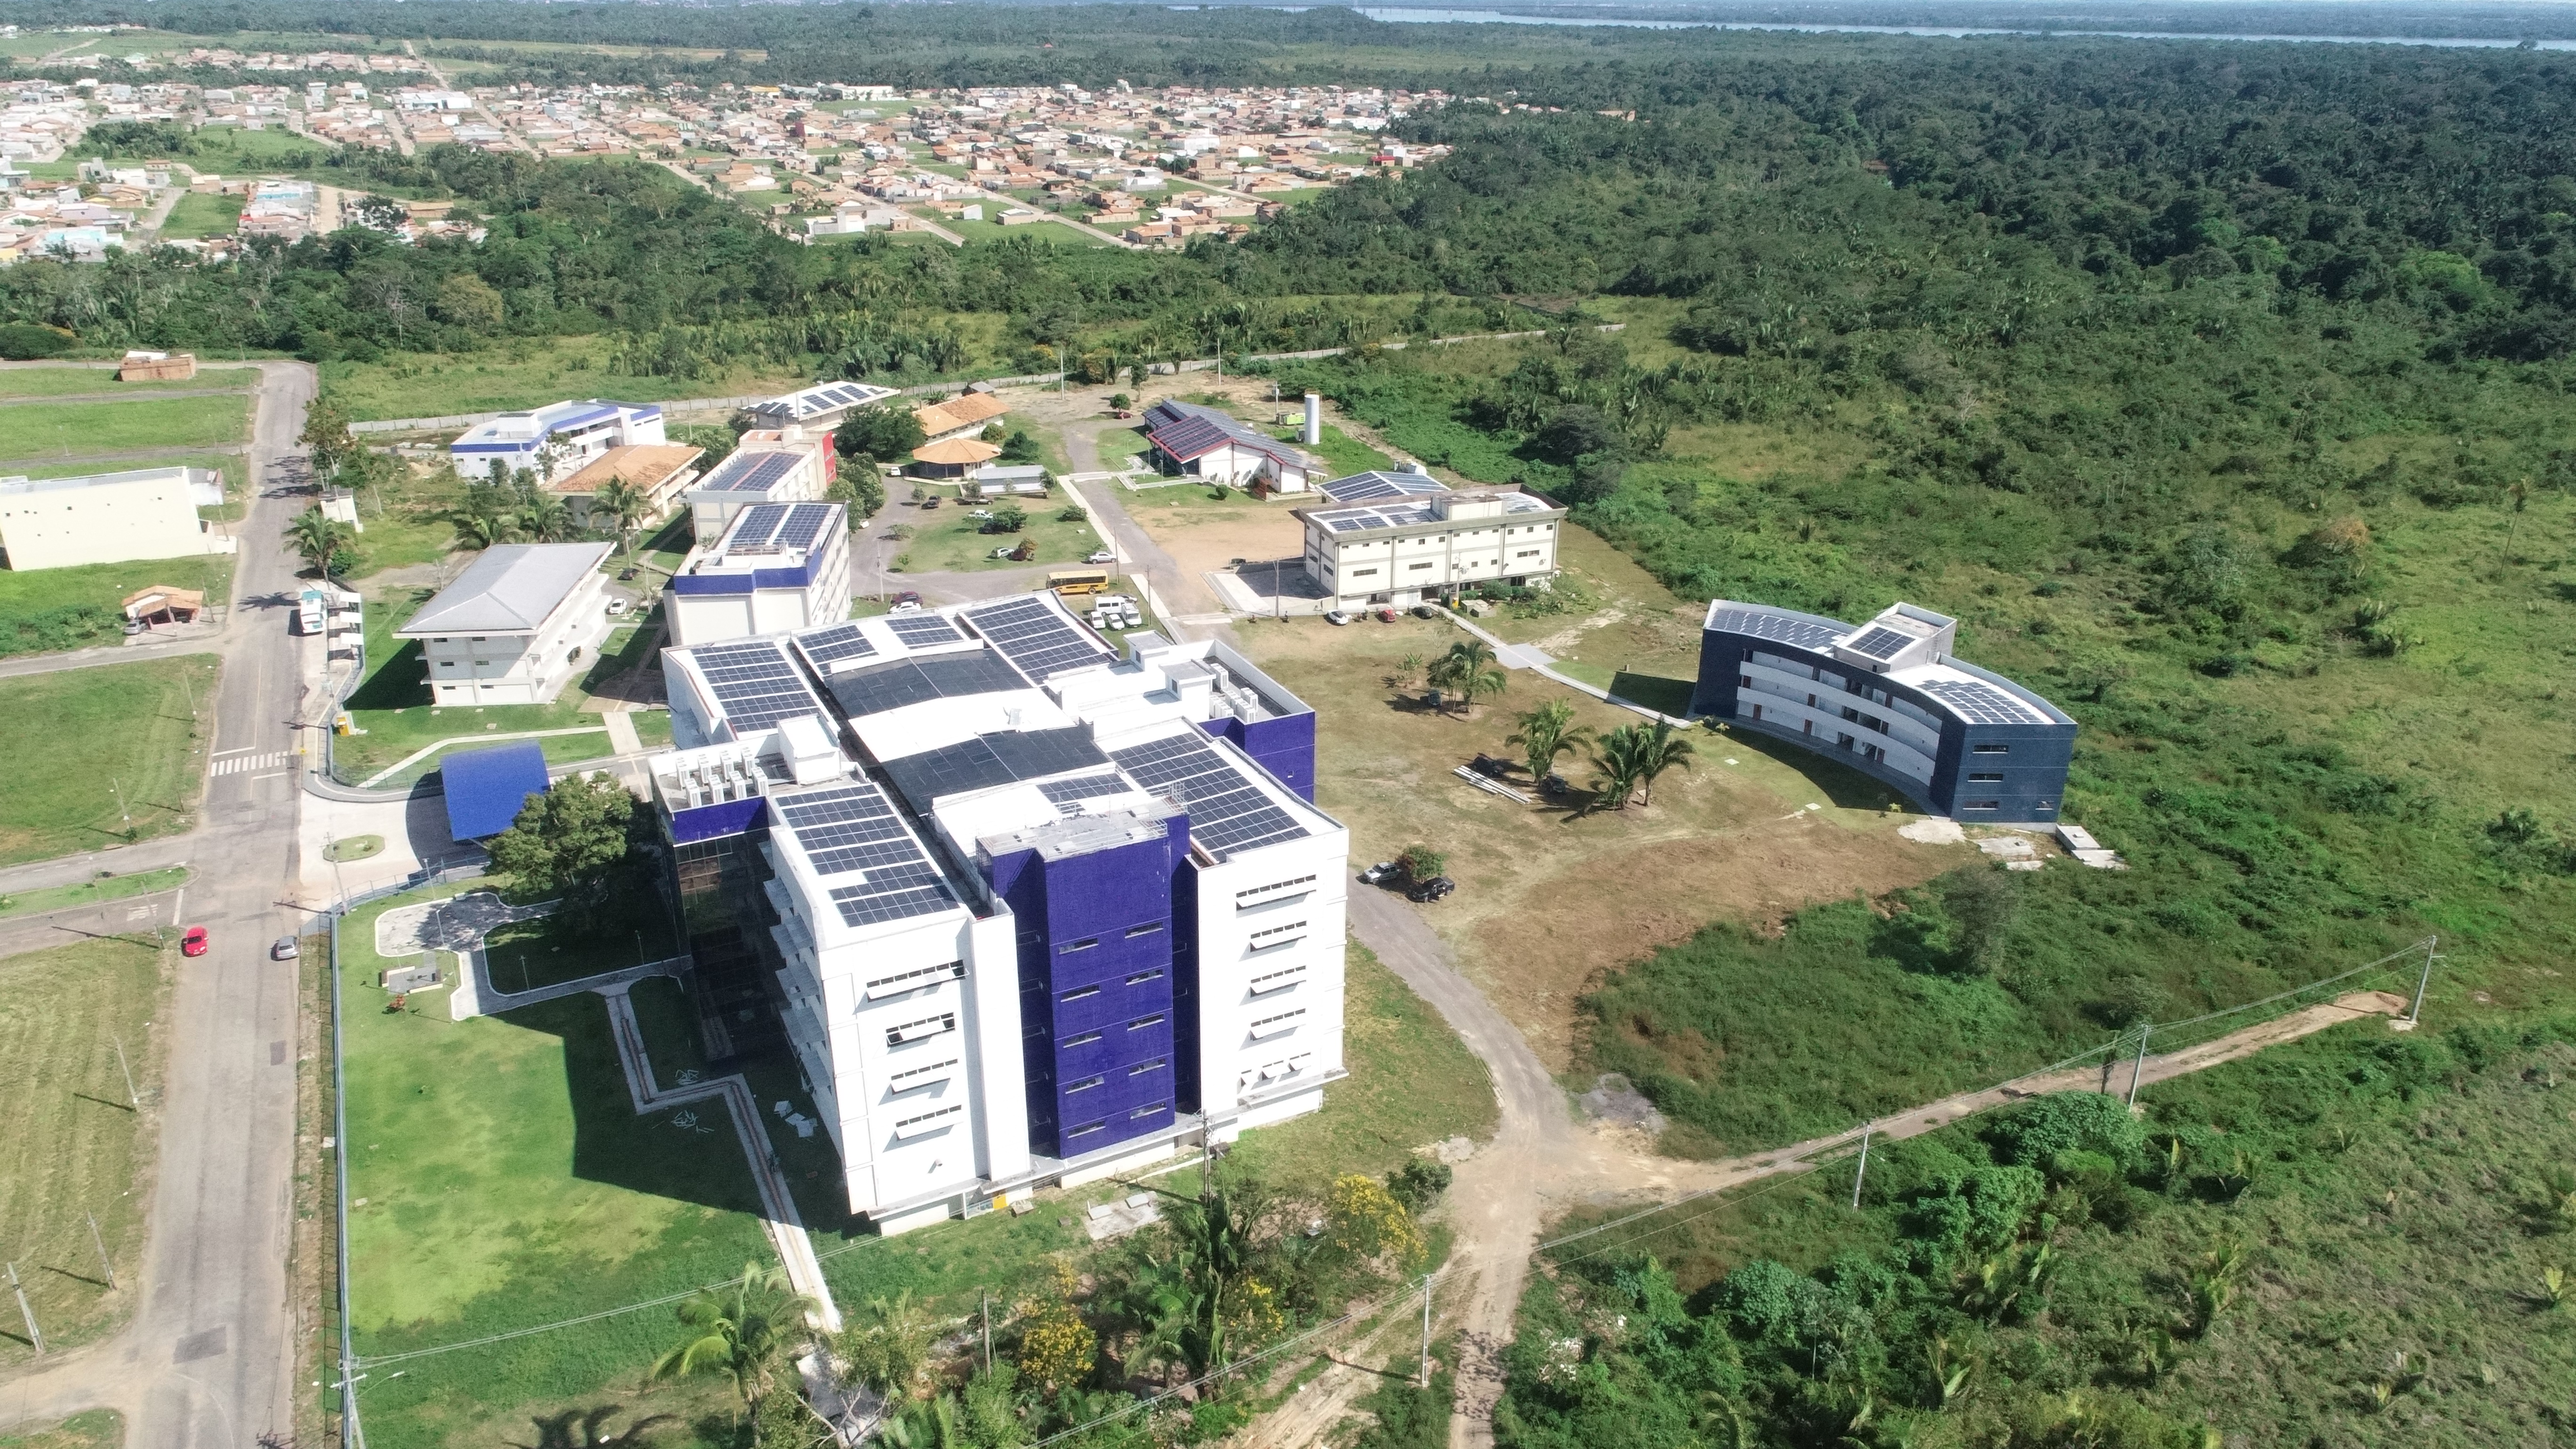 Unifesspa Amplia Parque de Geração de Energia Solar Fotovoltaica - Unidade III